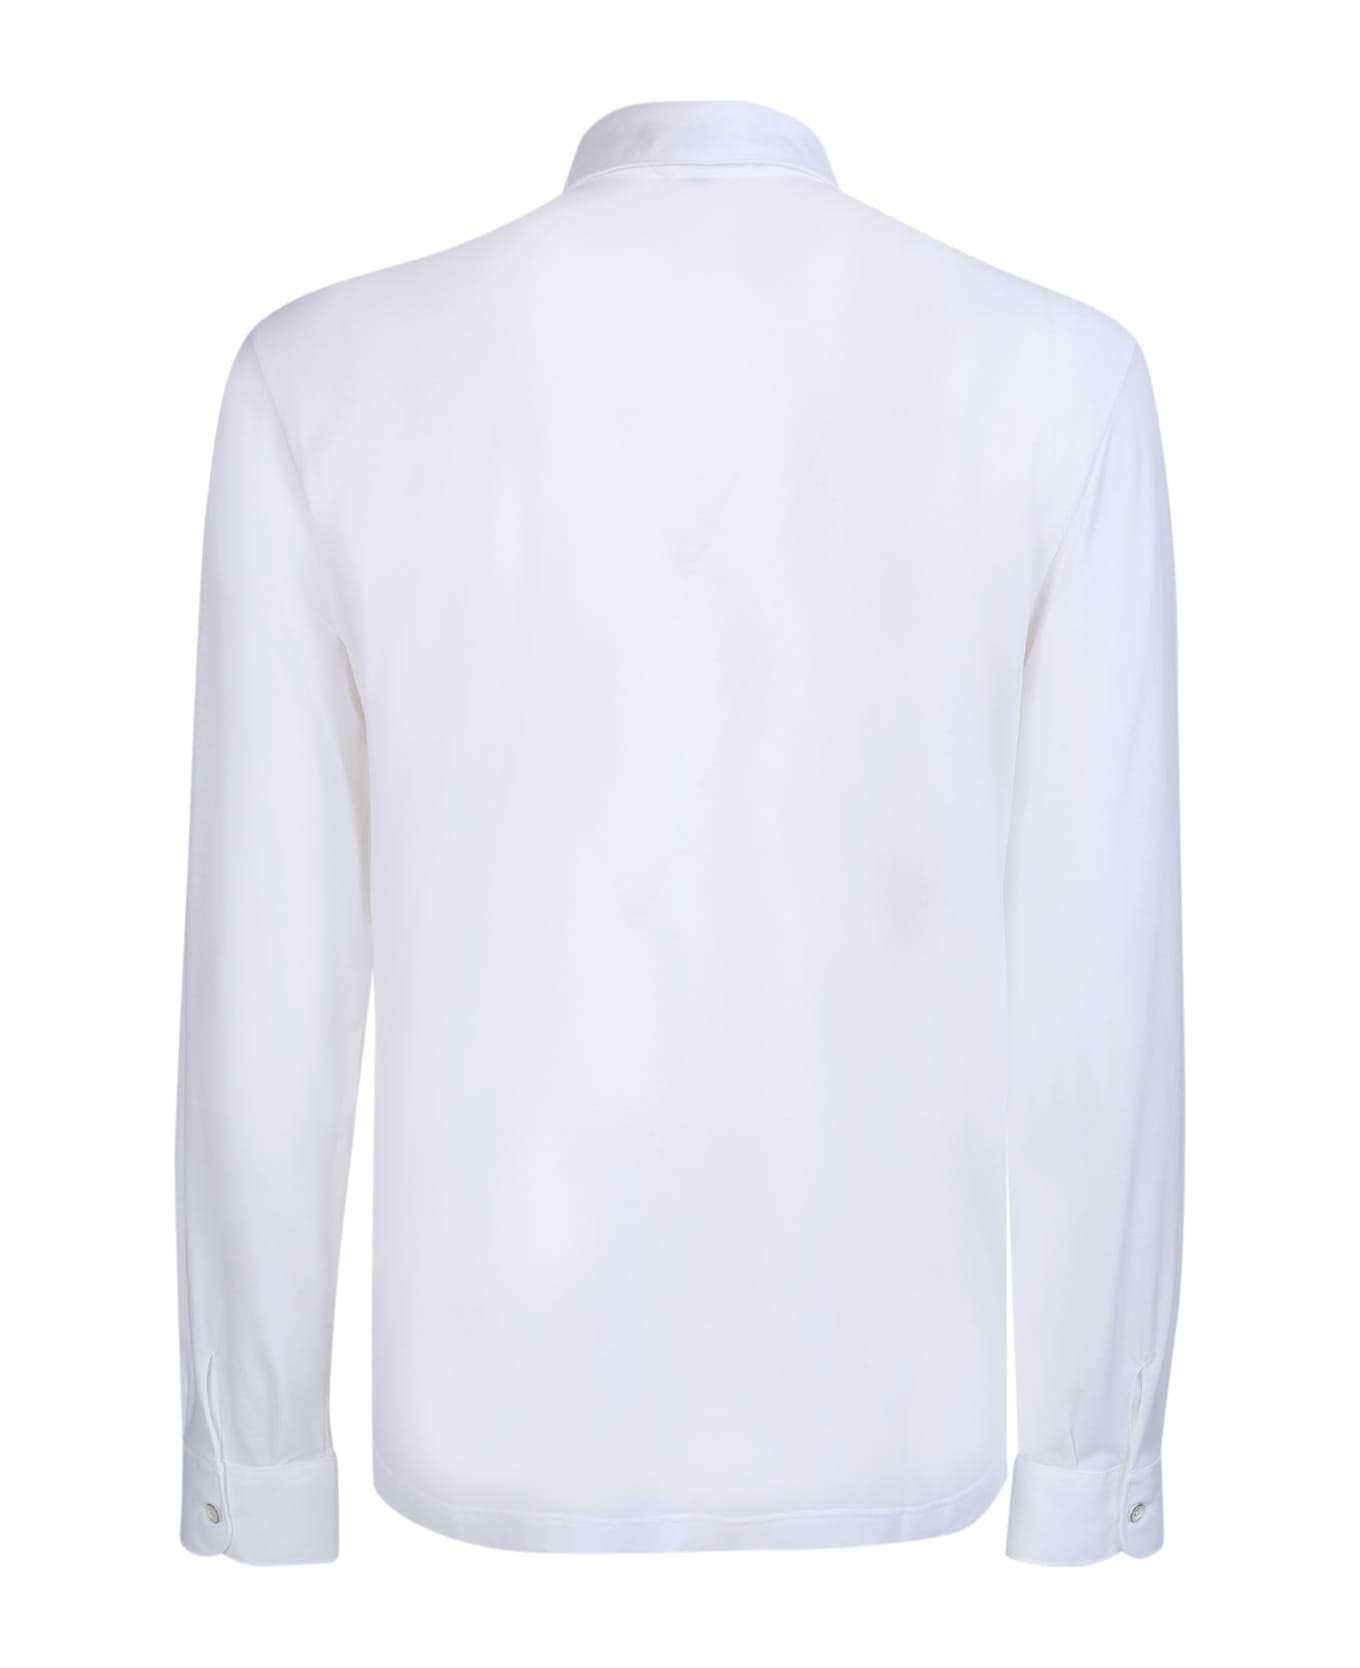 Herno Cotton Polo In White - White